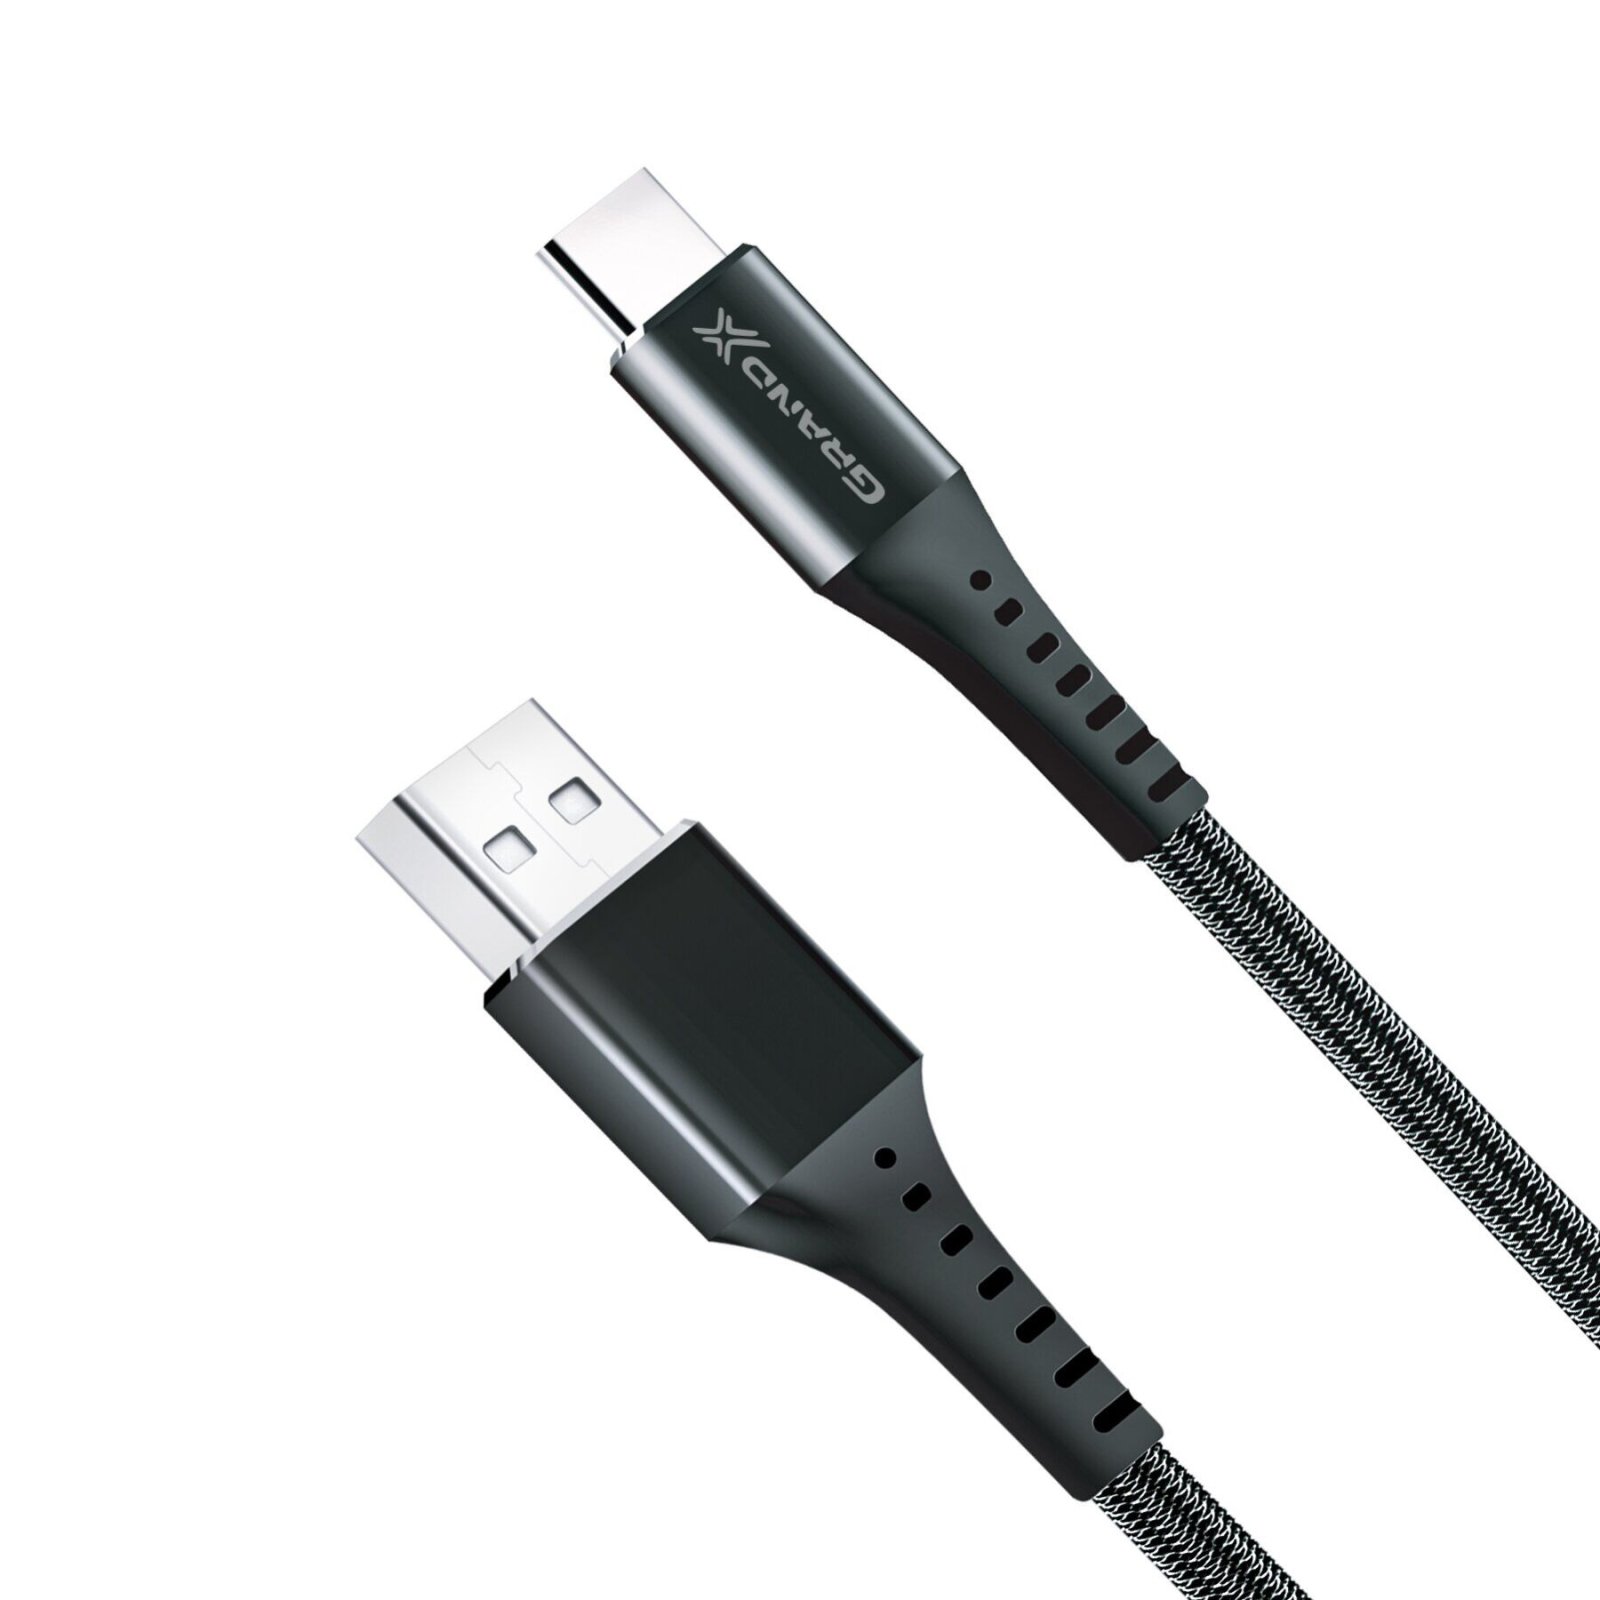 Дата кабель USB 2.0 AM to Type-C 1.2m Grey Grand-X (FC-12G) изображение 2